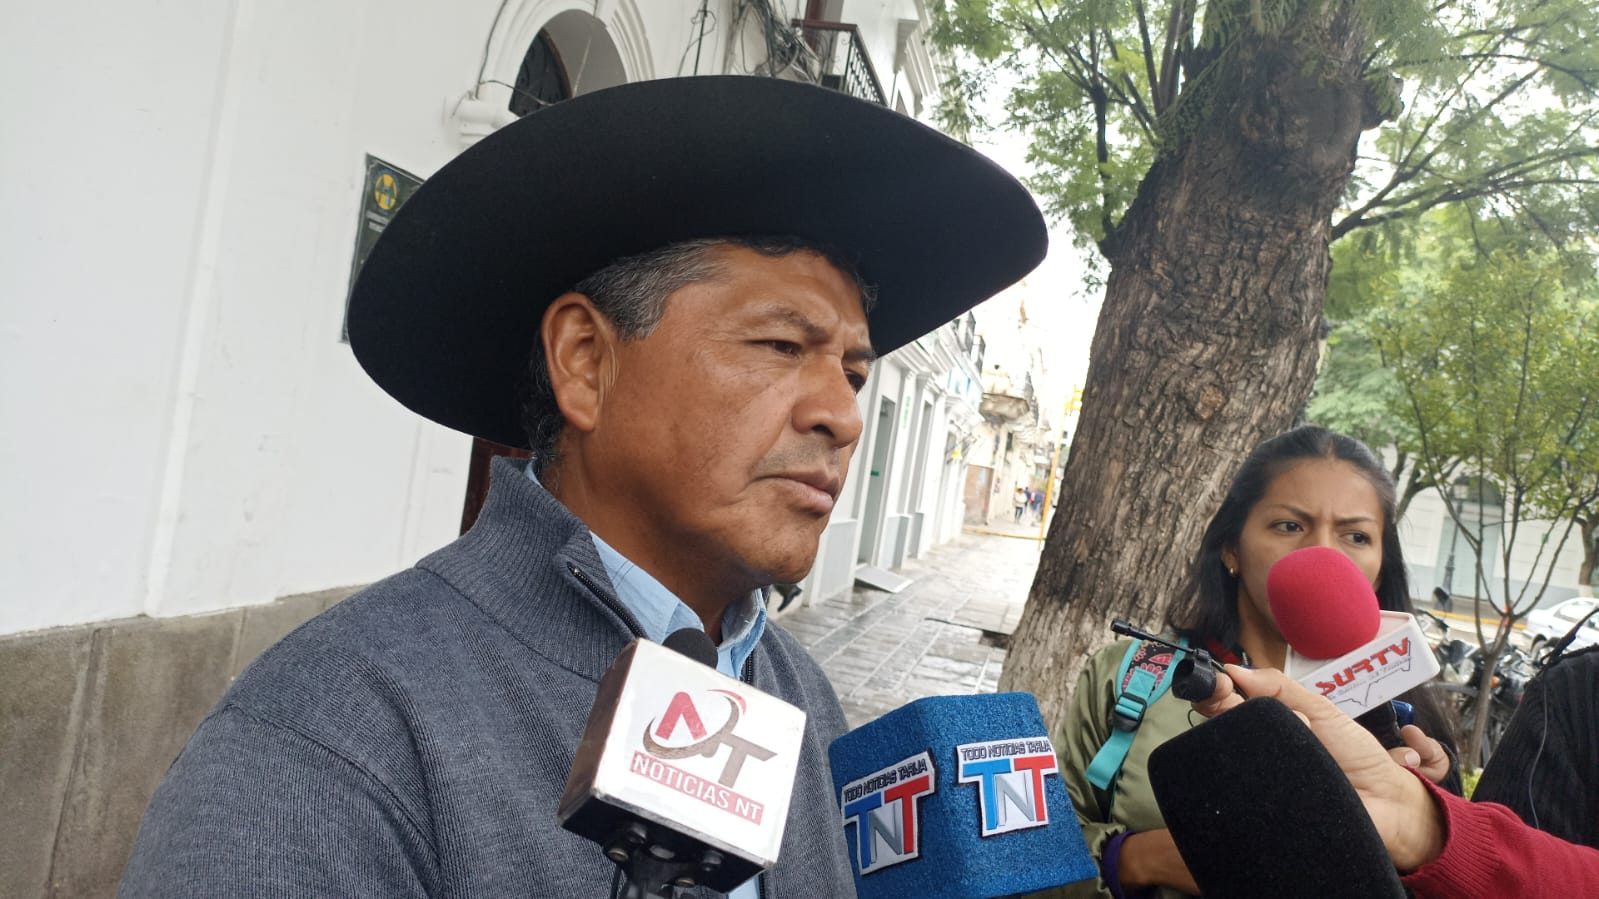 Reconocido ex dirigente campesino expresa preocupación por situación política en Bolivia